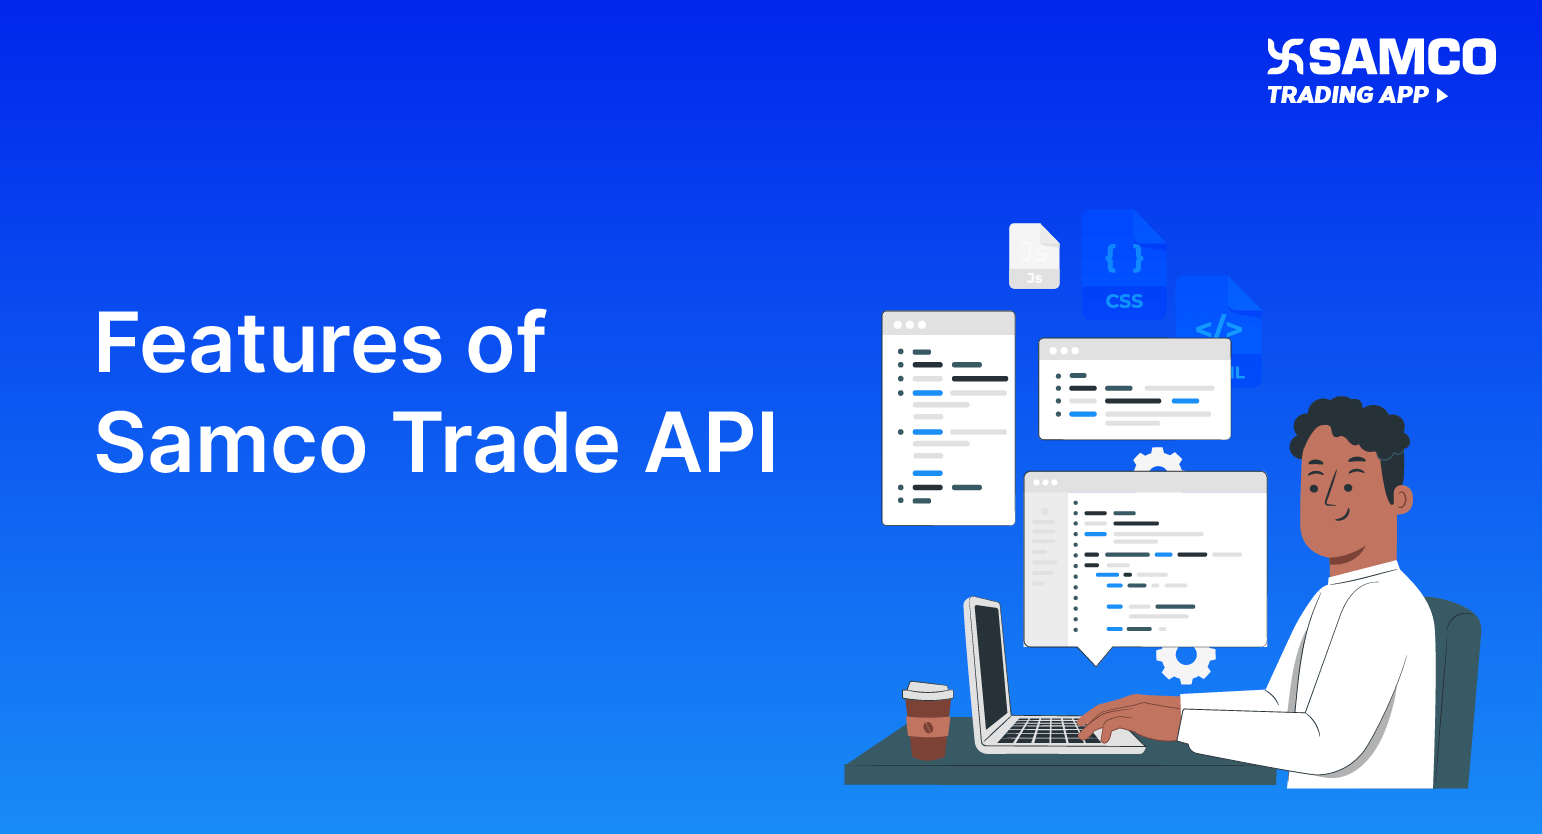 Explore Samco Trade API Features